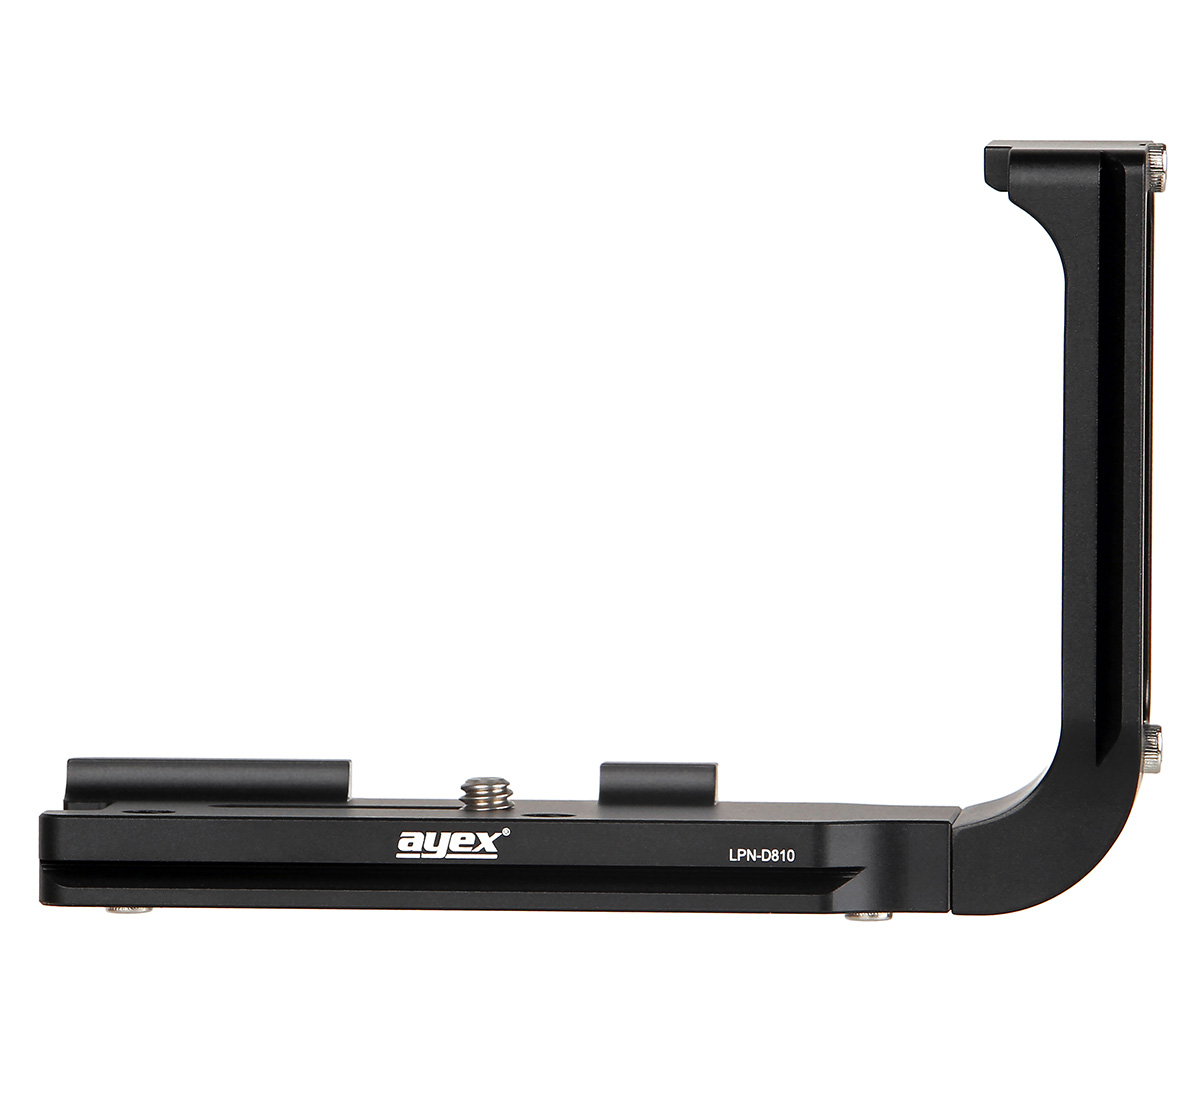 Kamerahalterung Schnellwechselplatte für Nikon D810 und Arca-Swiss Standard, ayex LPN-D810